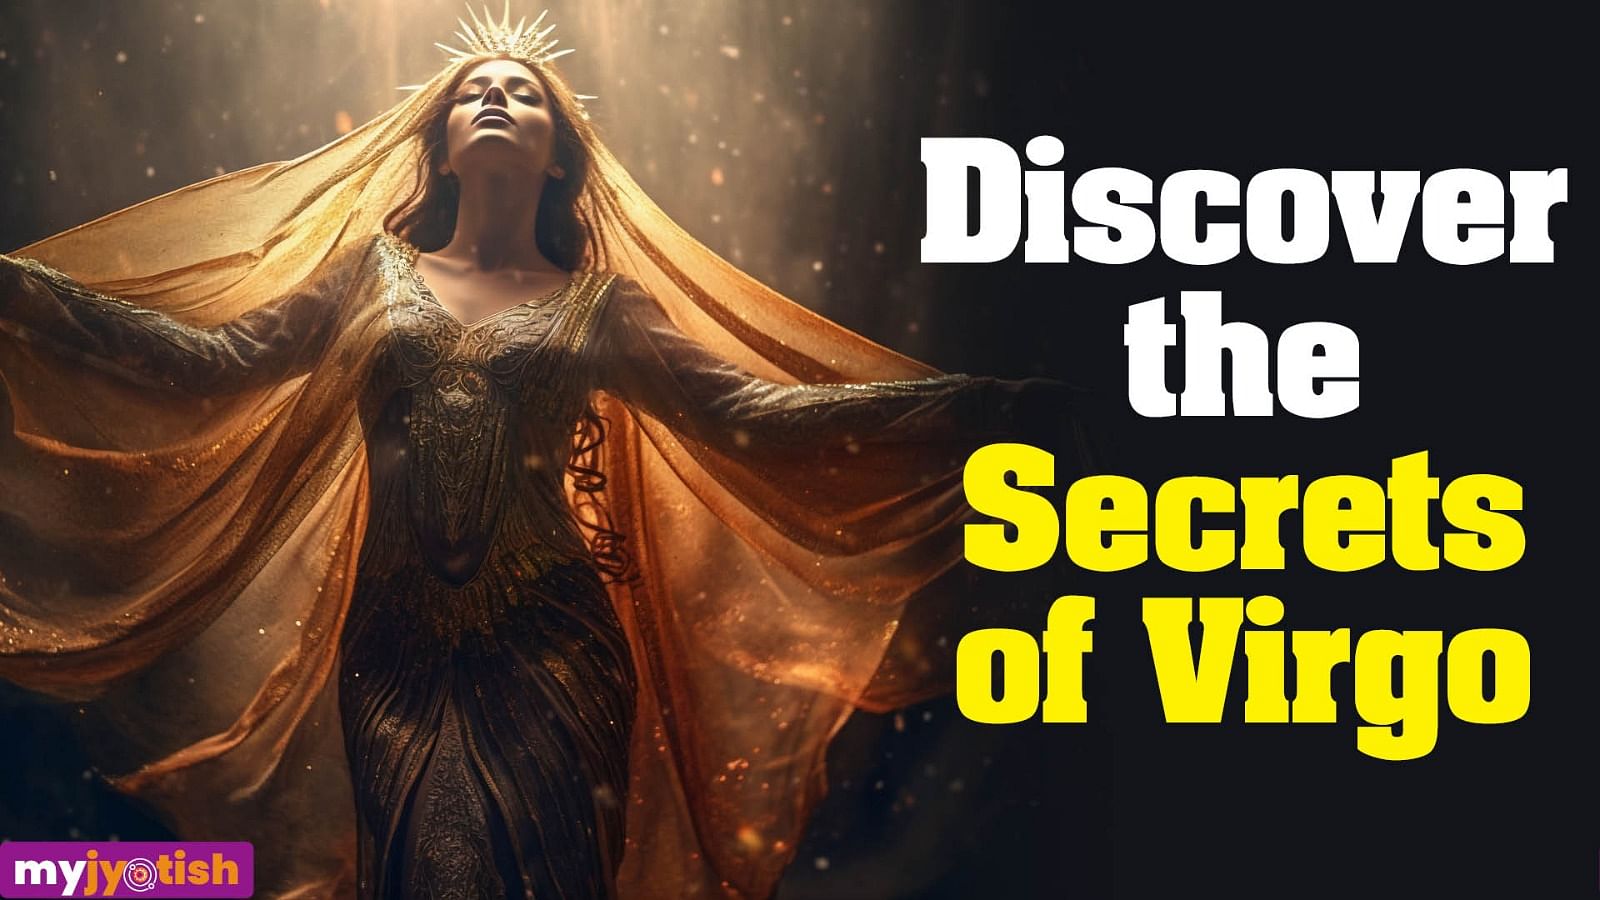 Discover the Secrets of Virgo